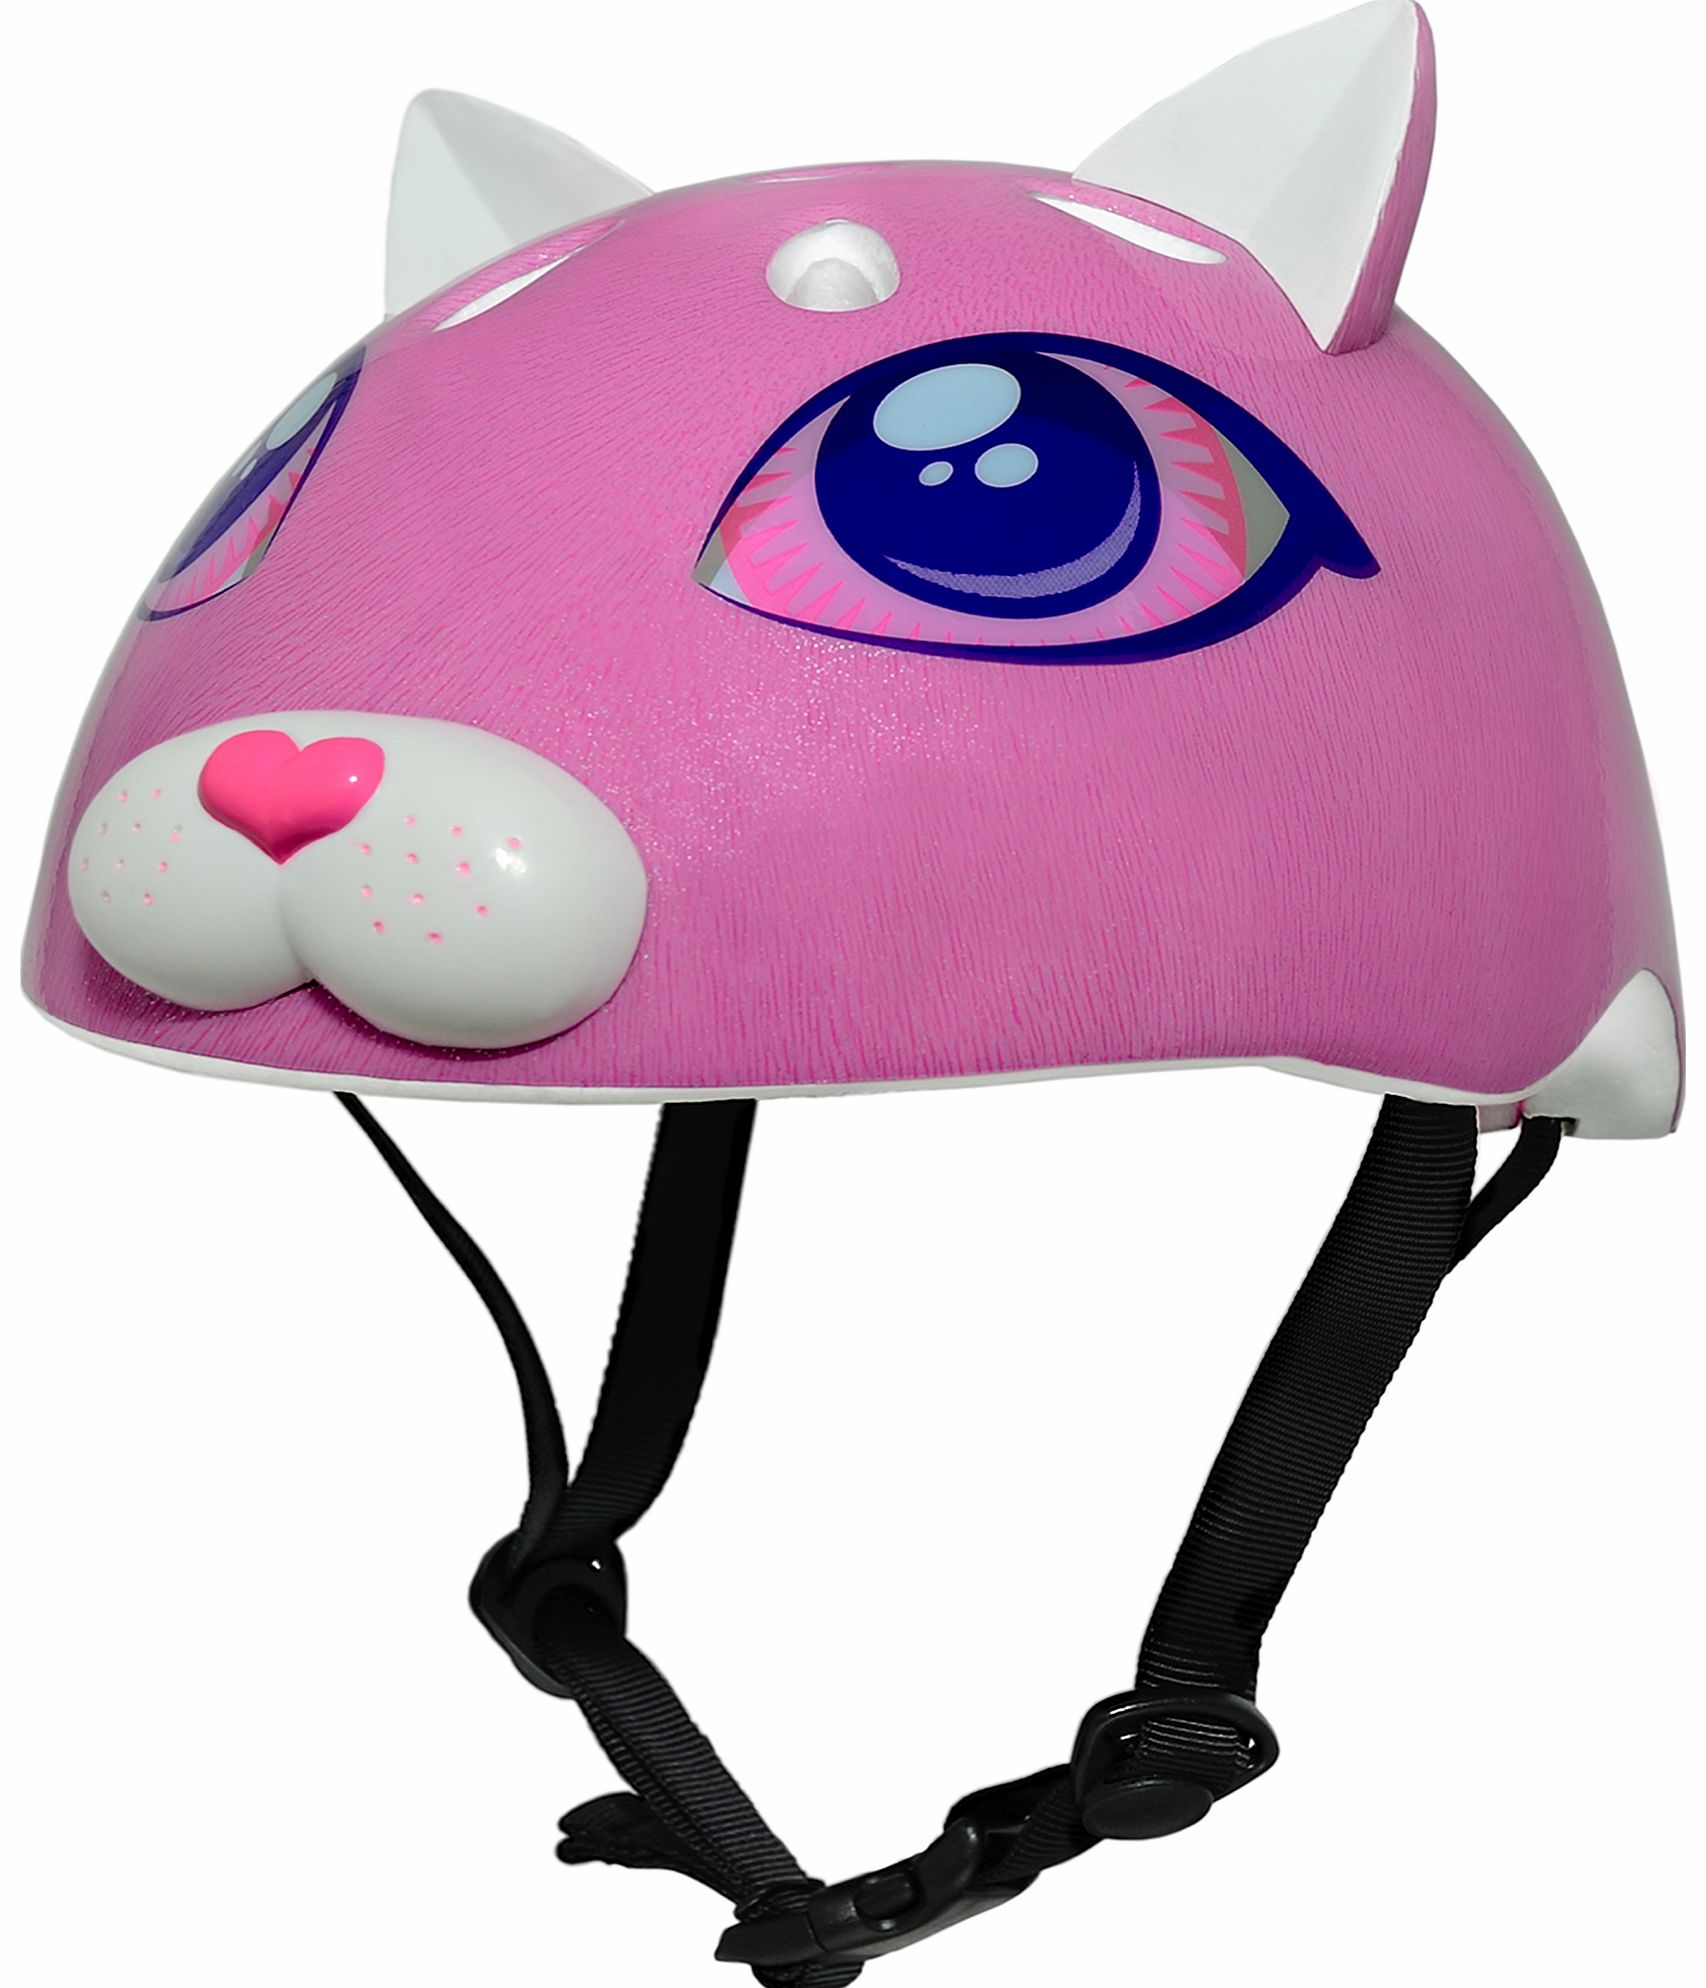 Razkullz Cutie Cat Helmet